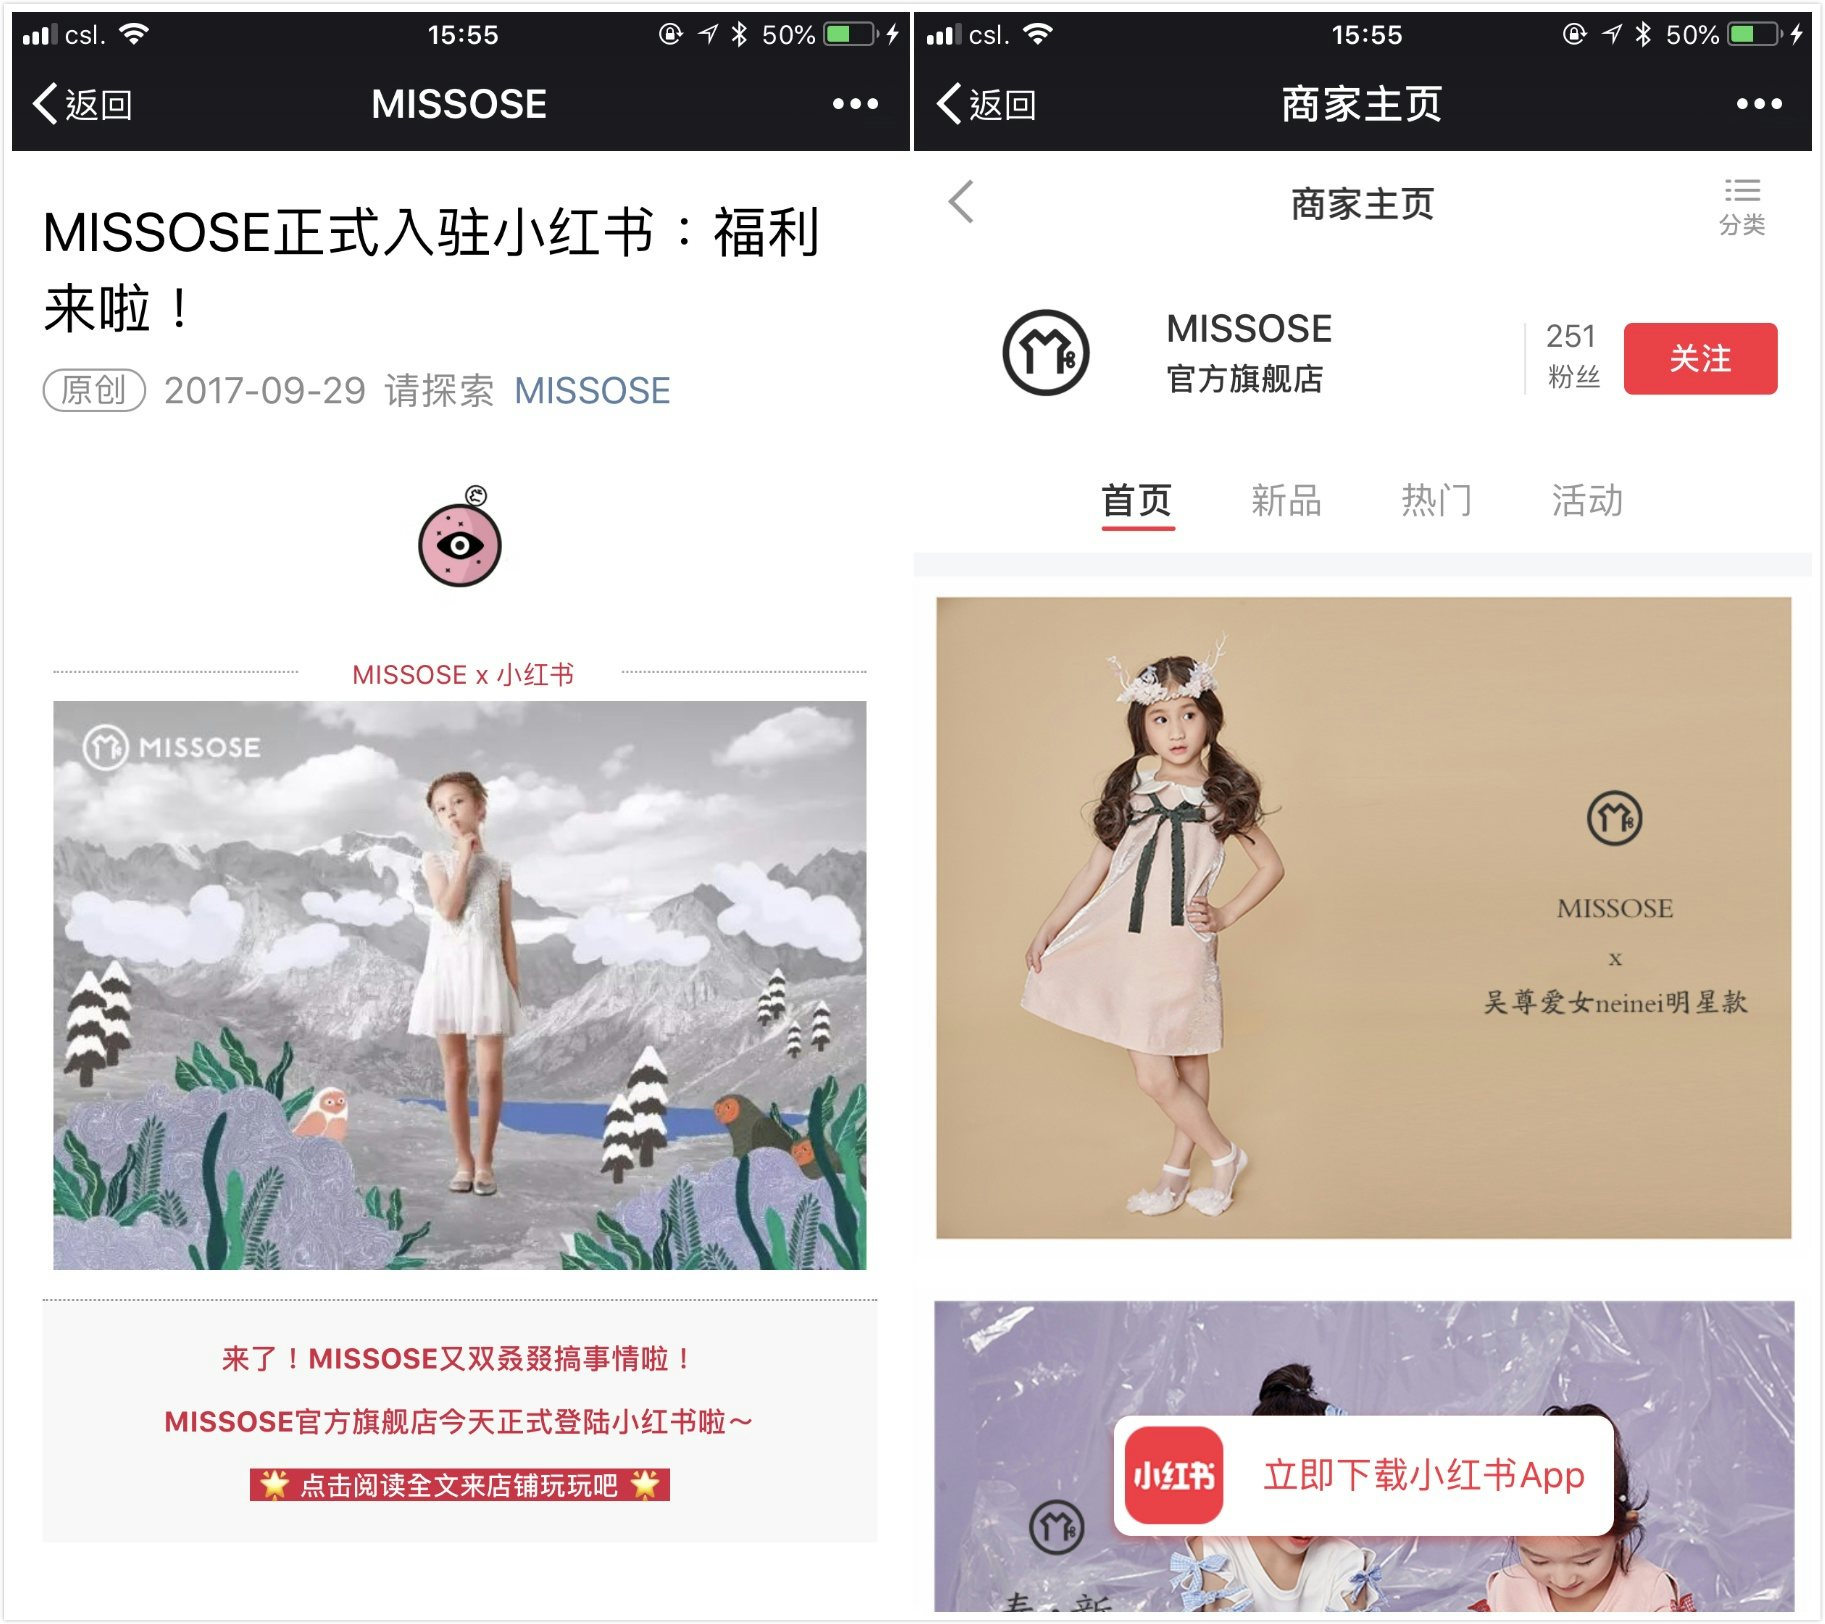 Users can access the brand’s Xiaohongshu online shop directly on WeChat. Photo: Xiaohongshu